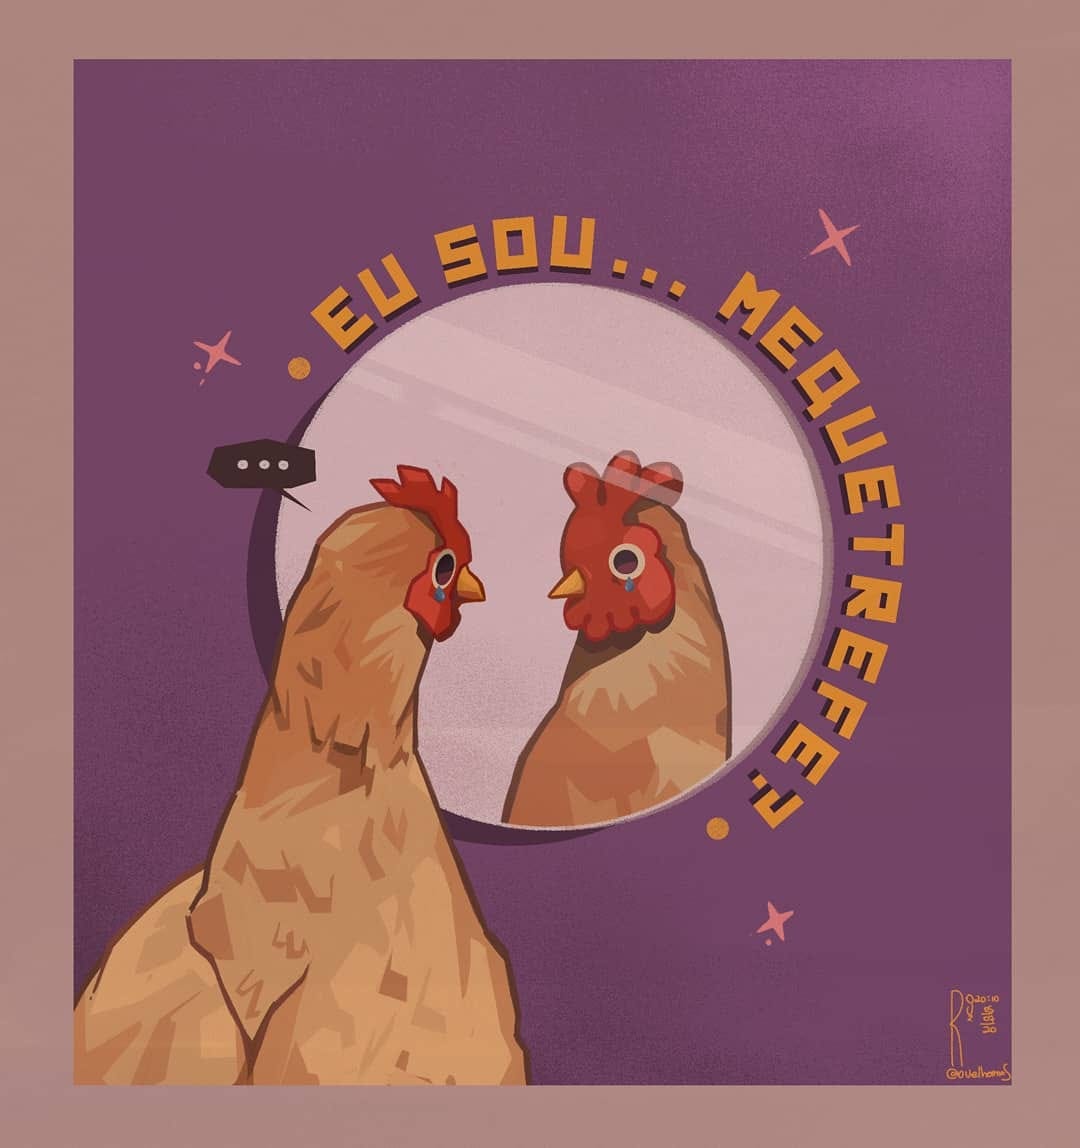 ilustração vetorizada e com cores vibrantes de uma galinha se olhando no espelho, com uma lágrima escorrendo de um olho. Ao redor do espelho o texto: eu sou mequetrefe?